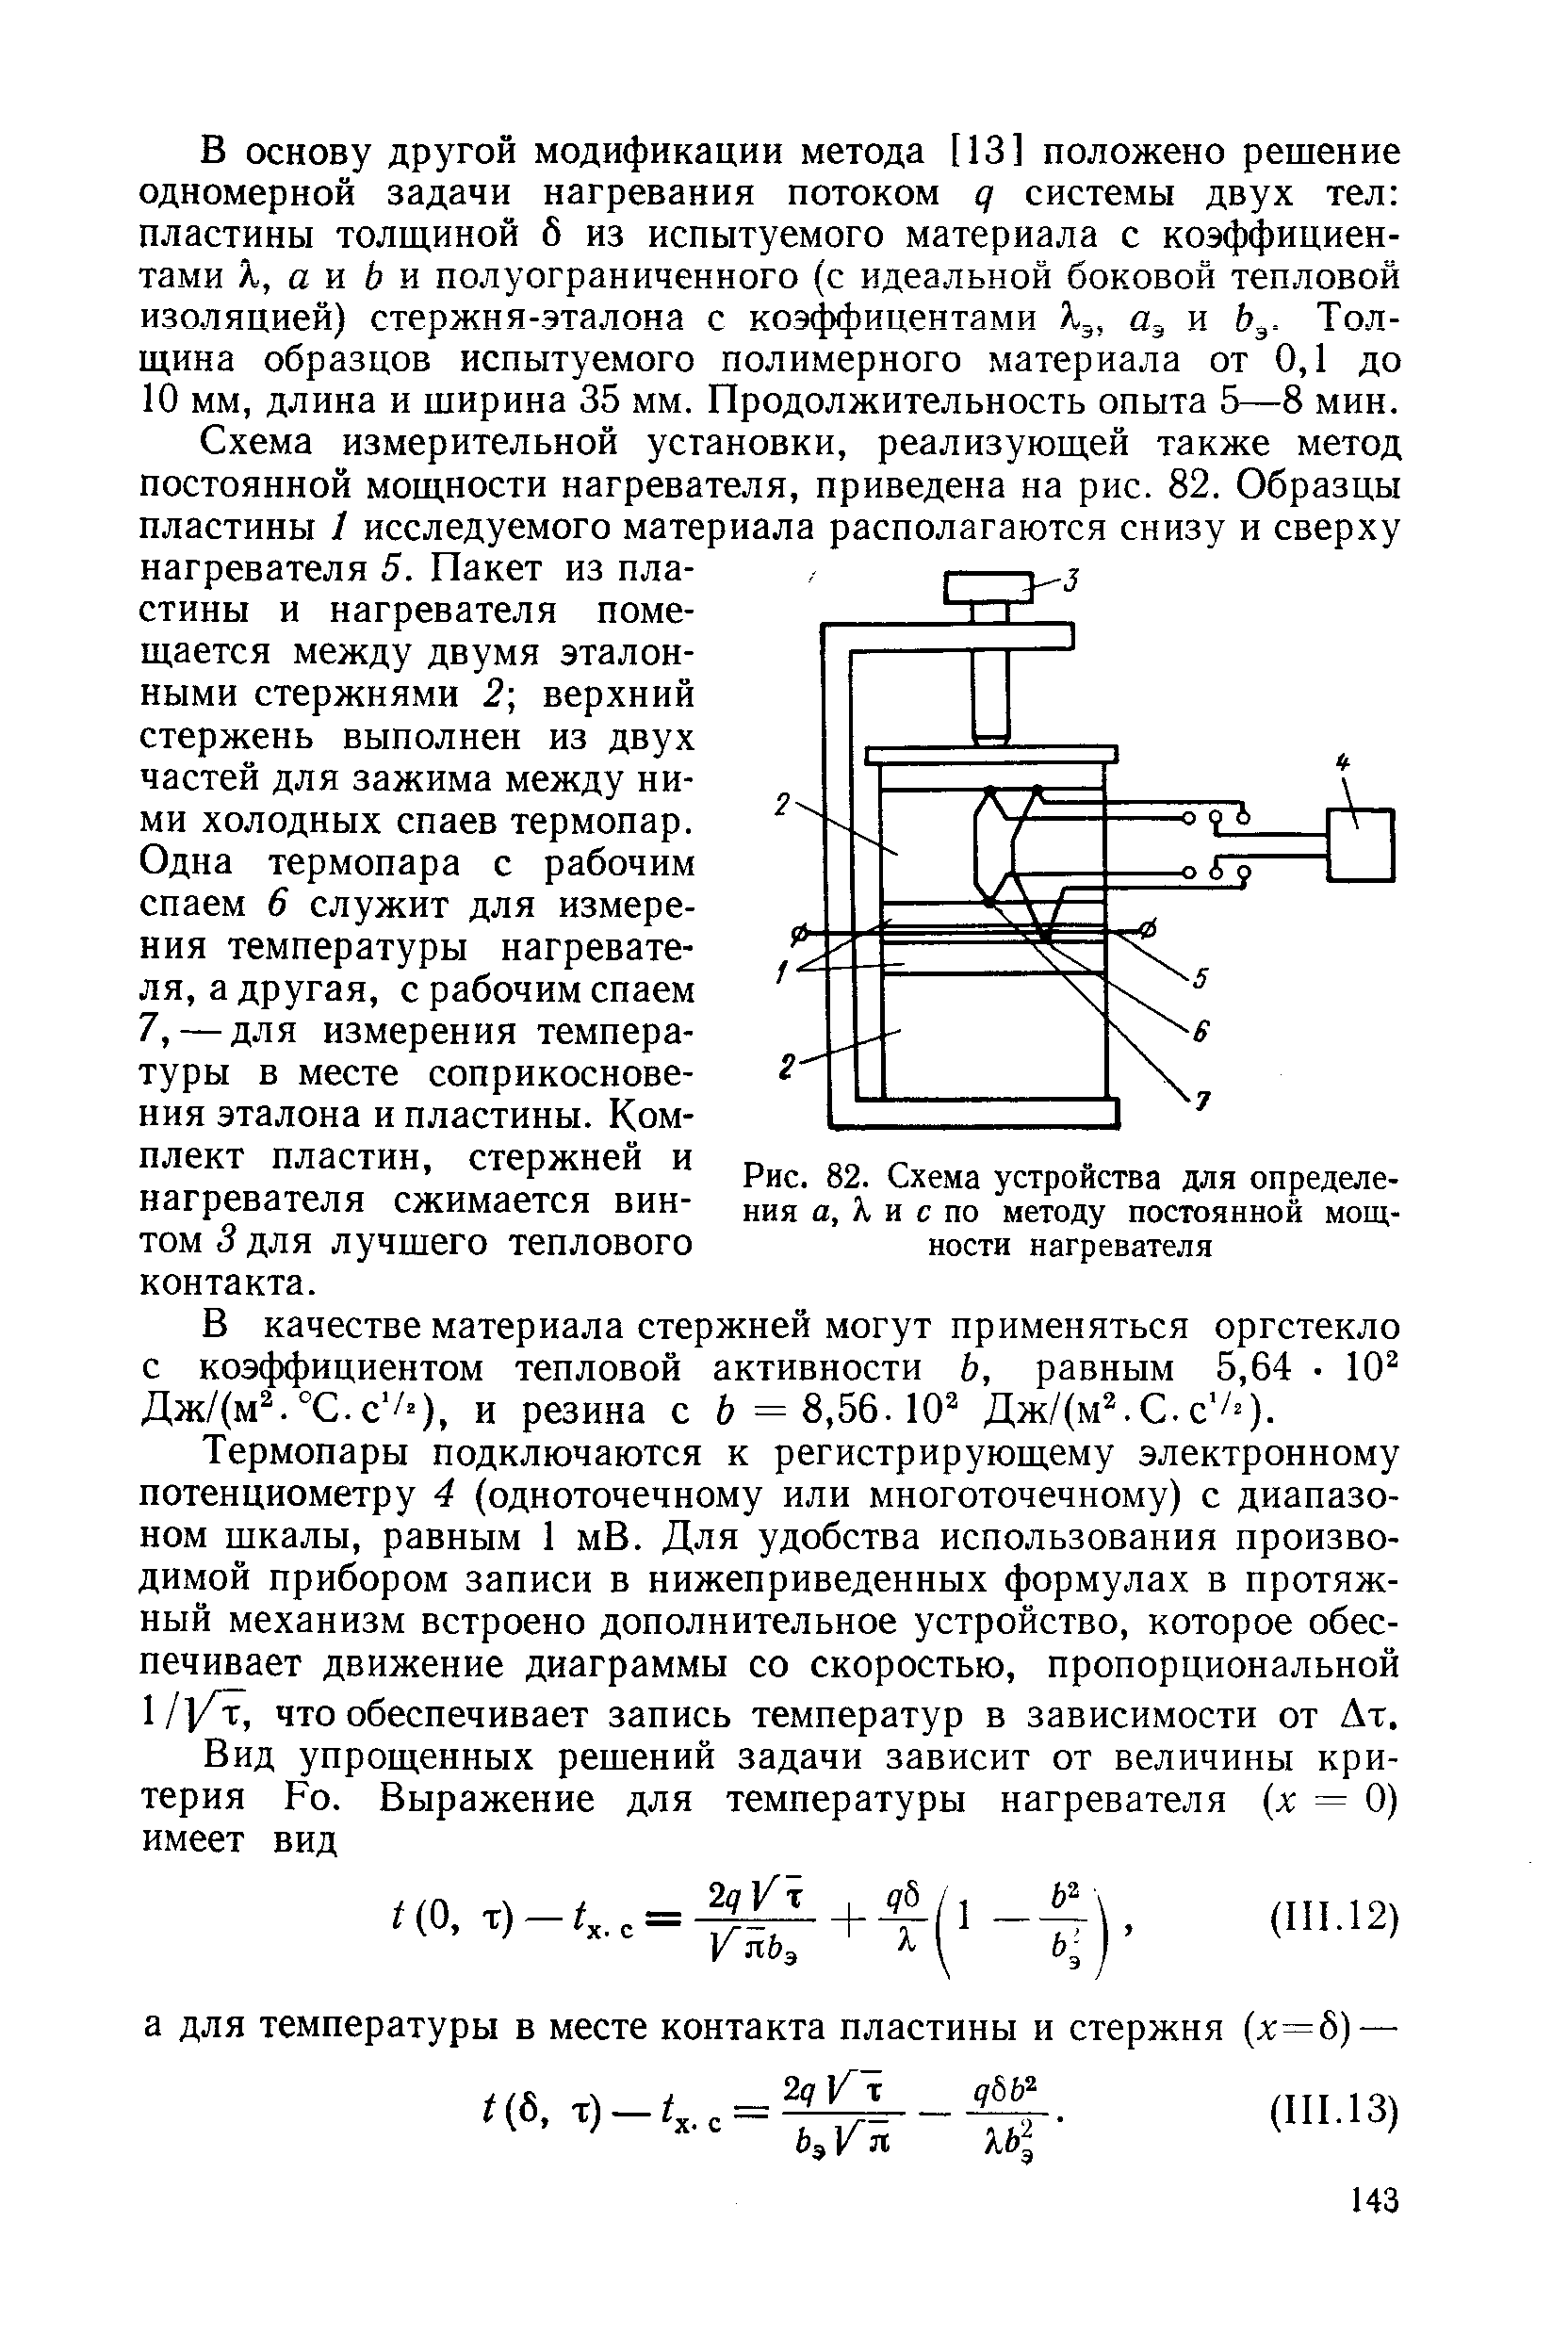 Рис. 82. Схема устройства для определения а, Л и с по методу постоянной мощности нагревателя
